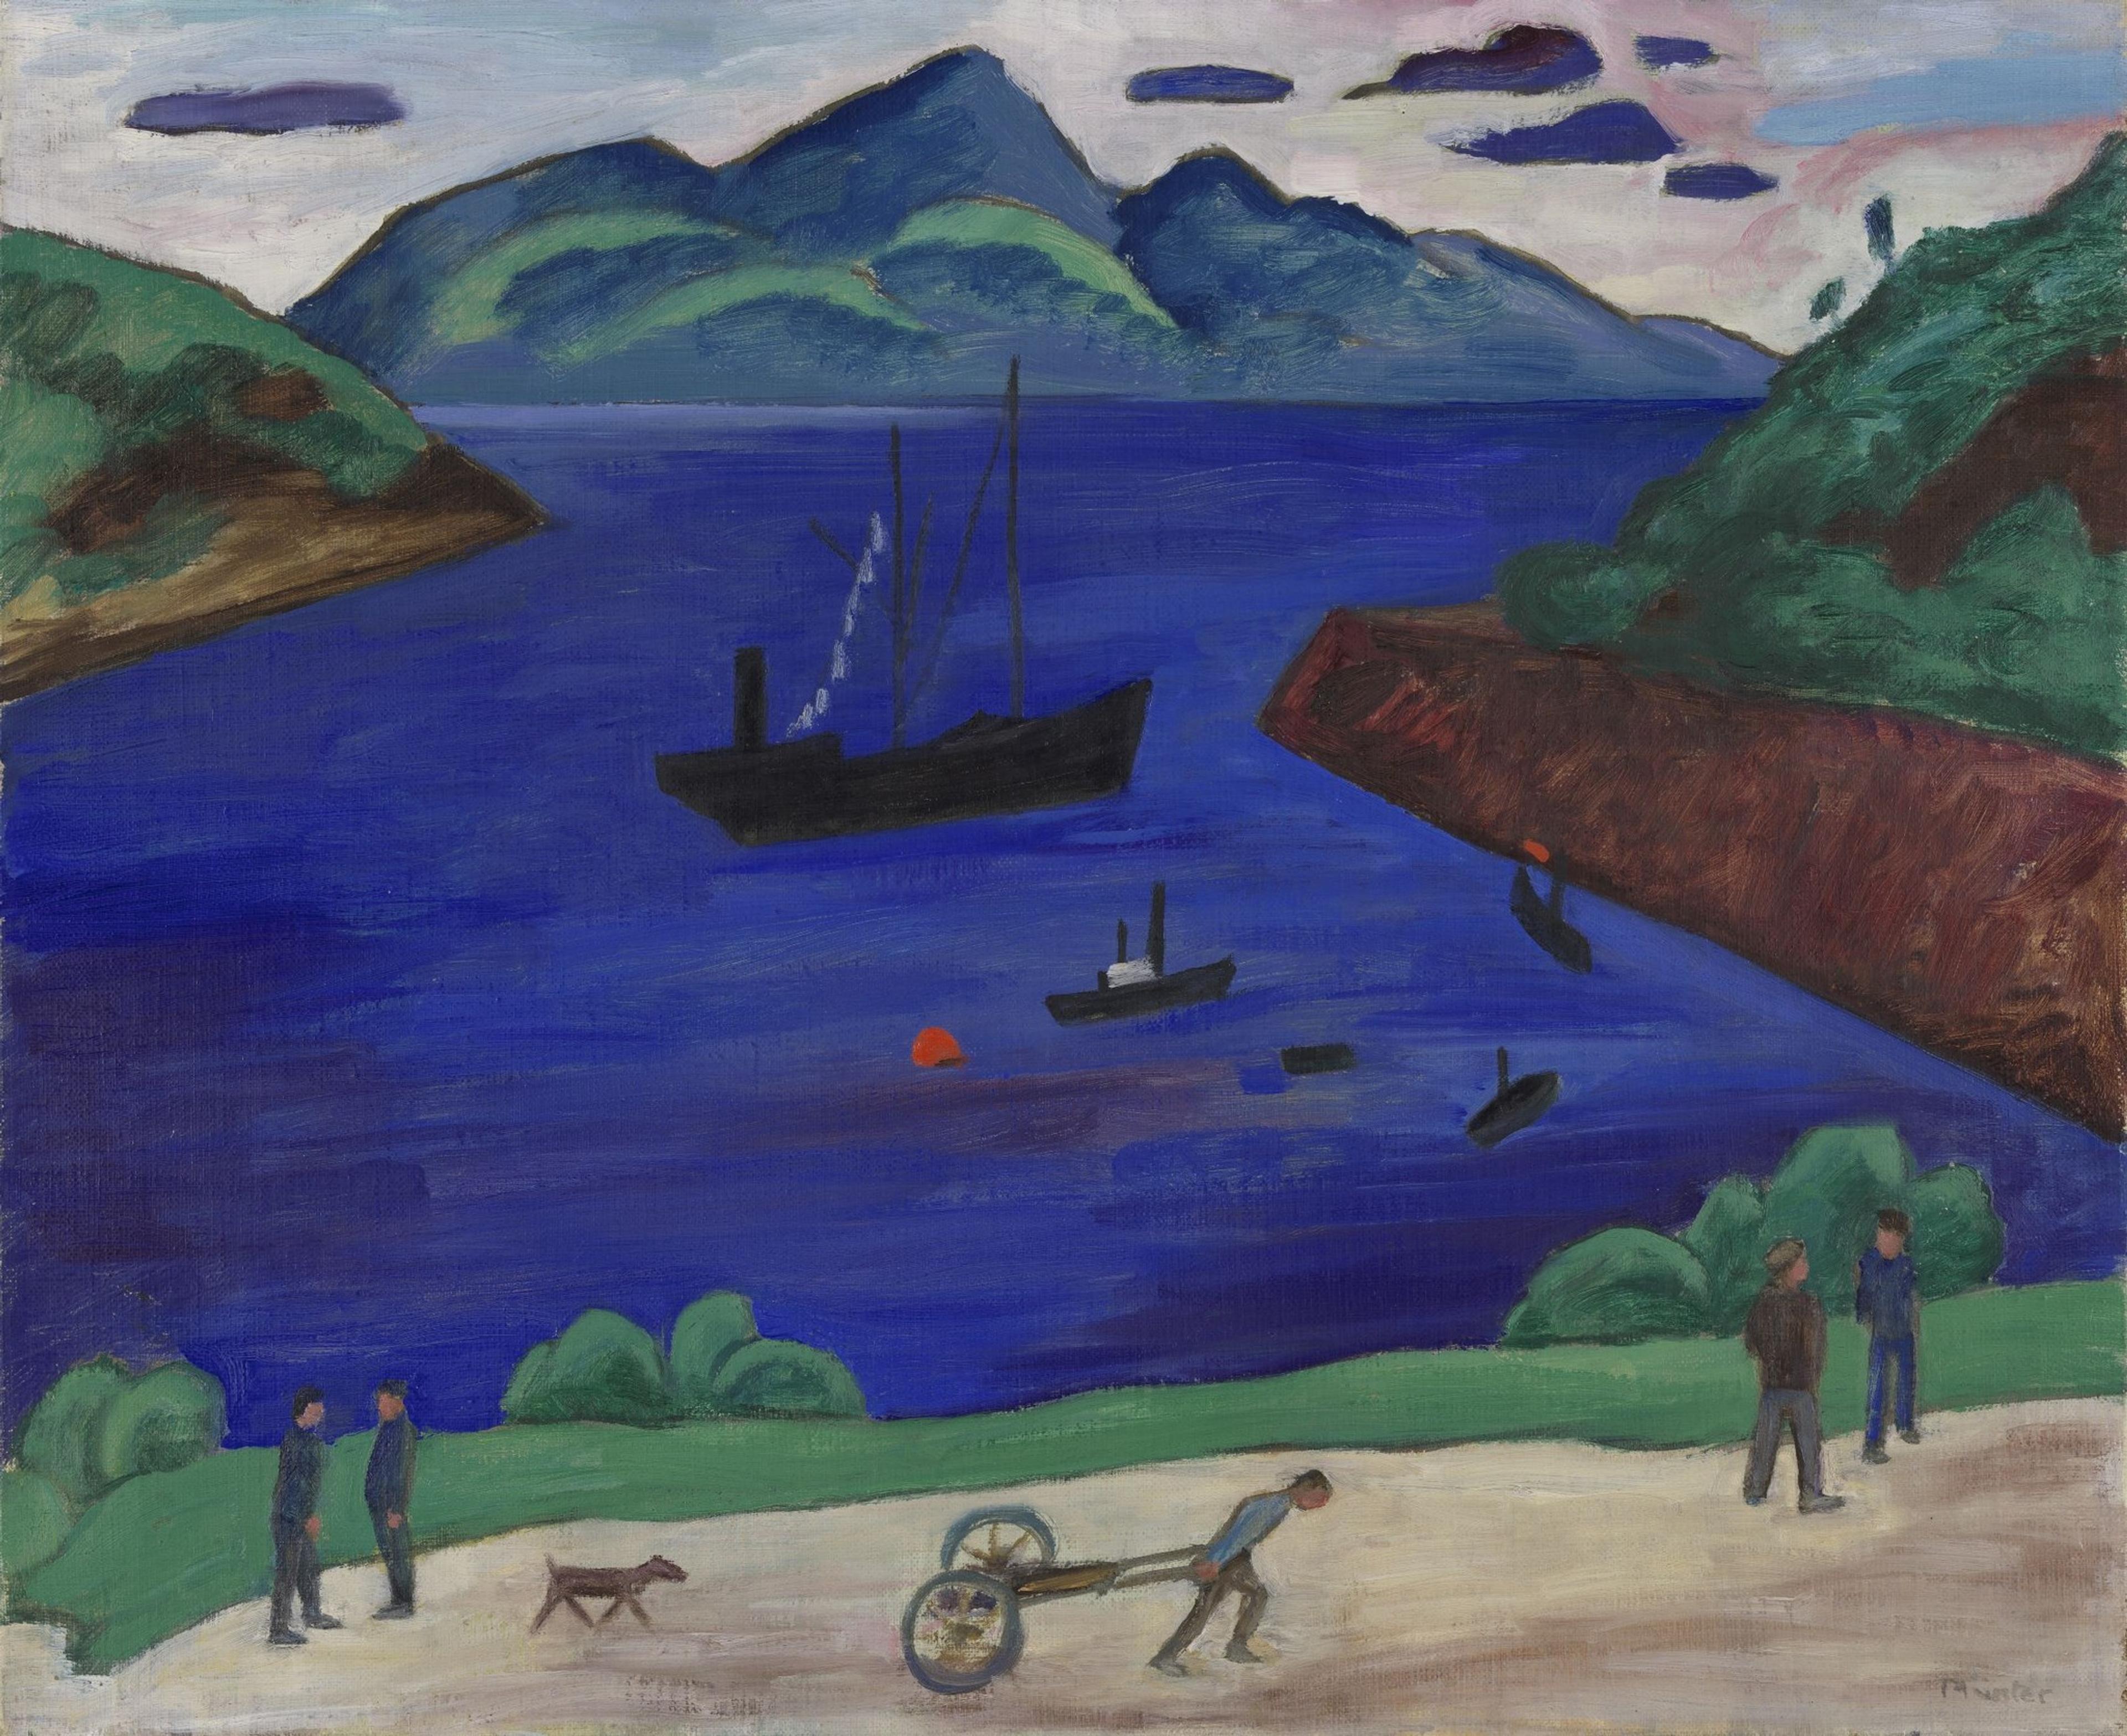 Et maleri av et fjordlandskap, i sterke, klare farger: Blått og grønt. Vi ser fjell i bakgrunnen, og mennesker langs en landevei i forgrunnen.